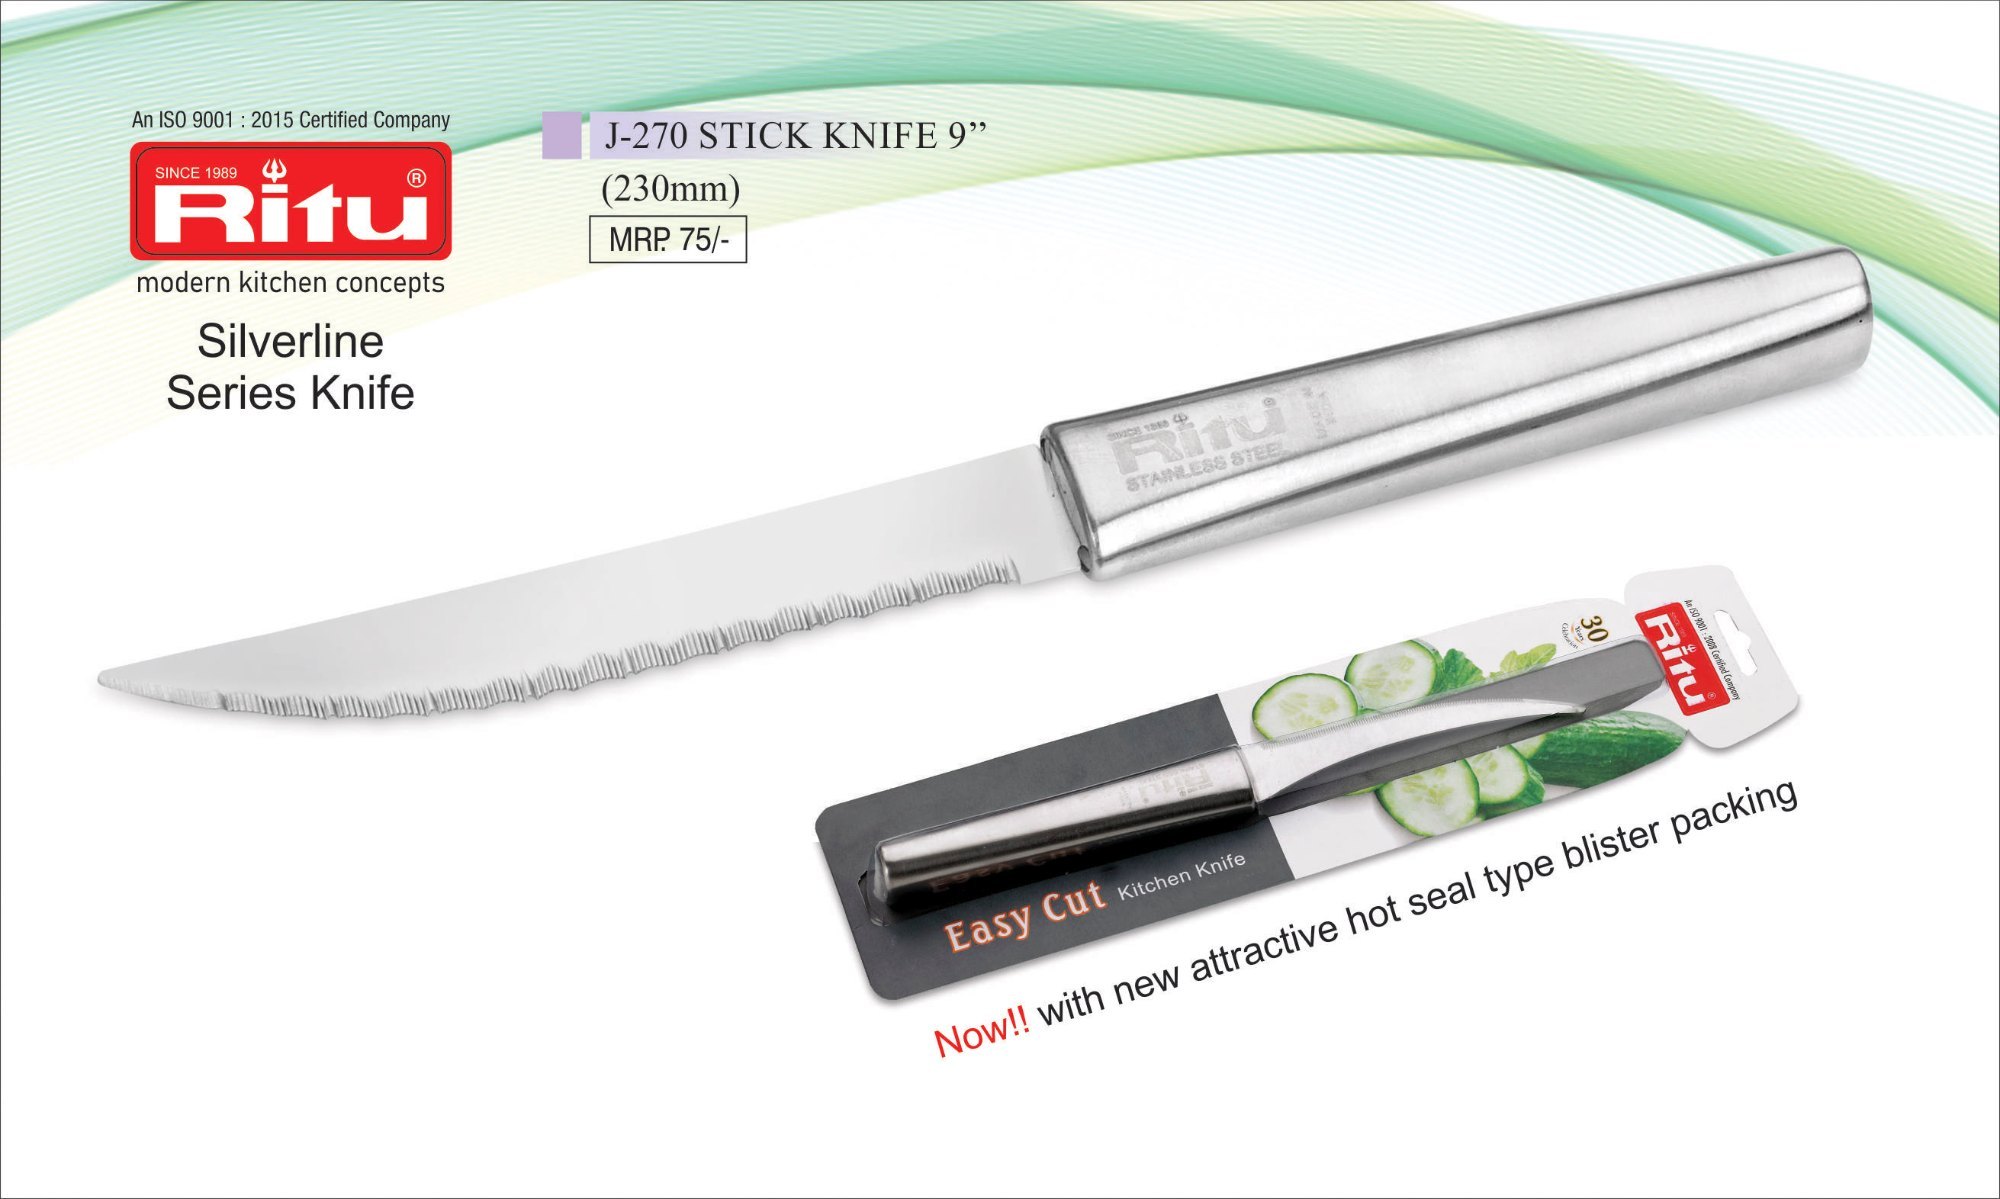 J-270 Stick Knife 9